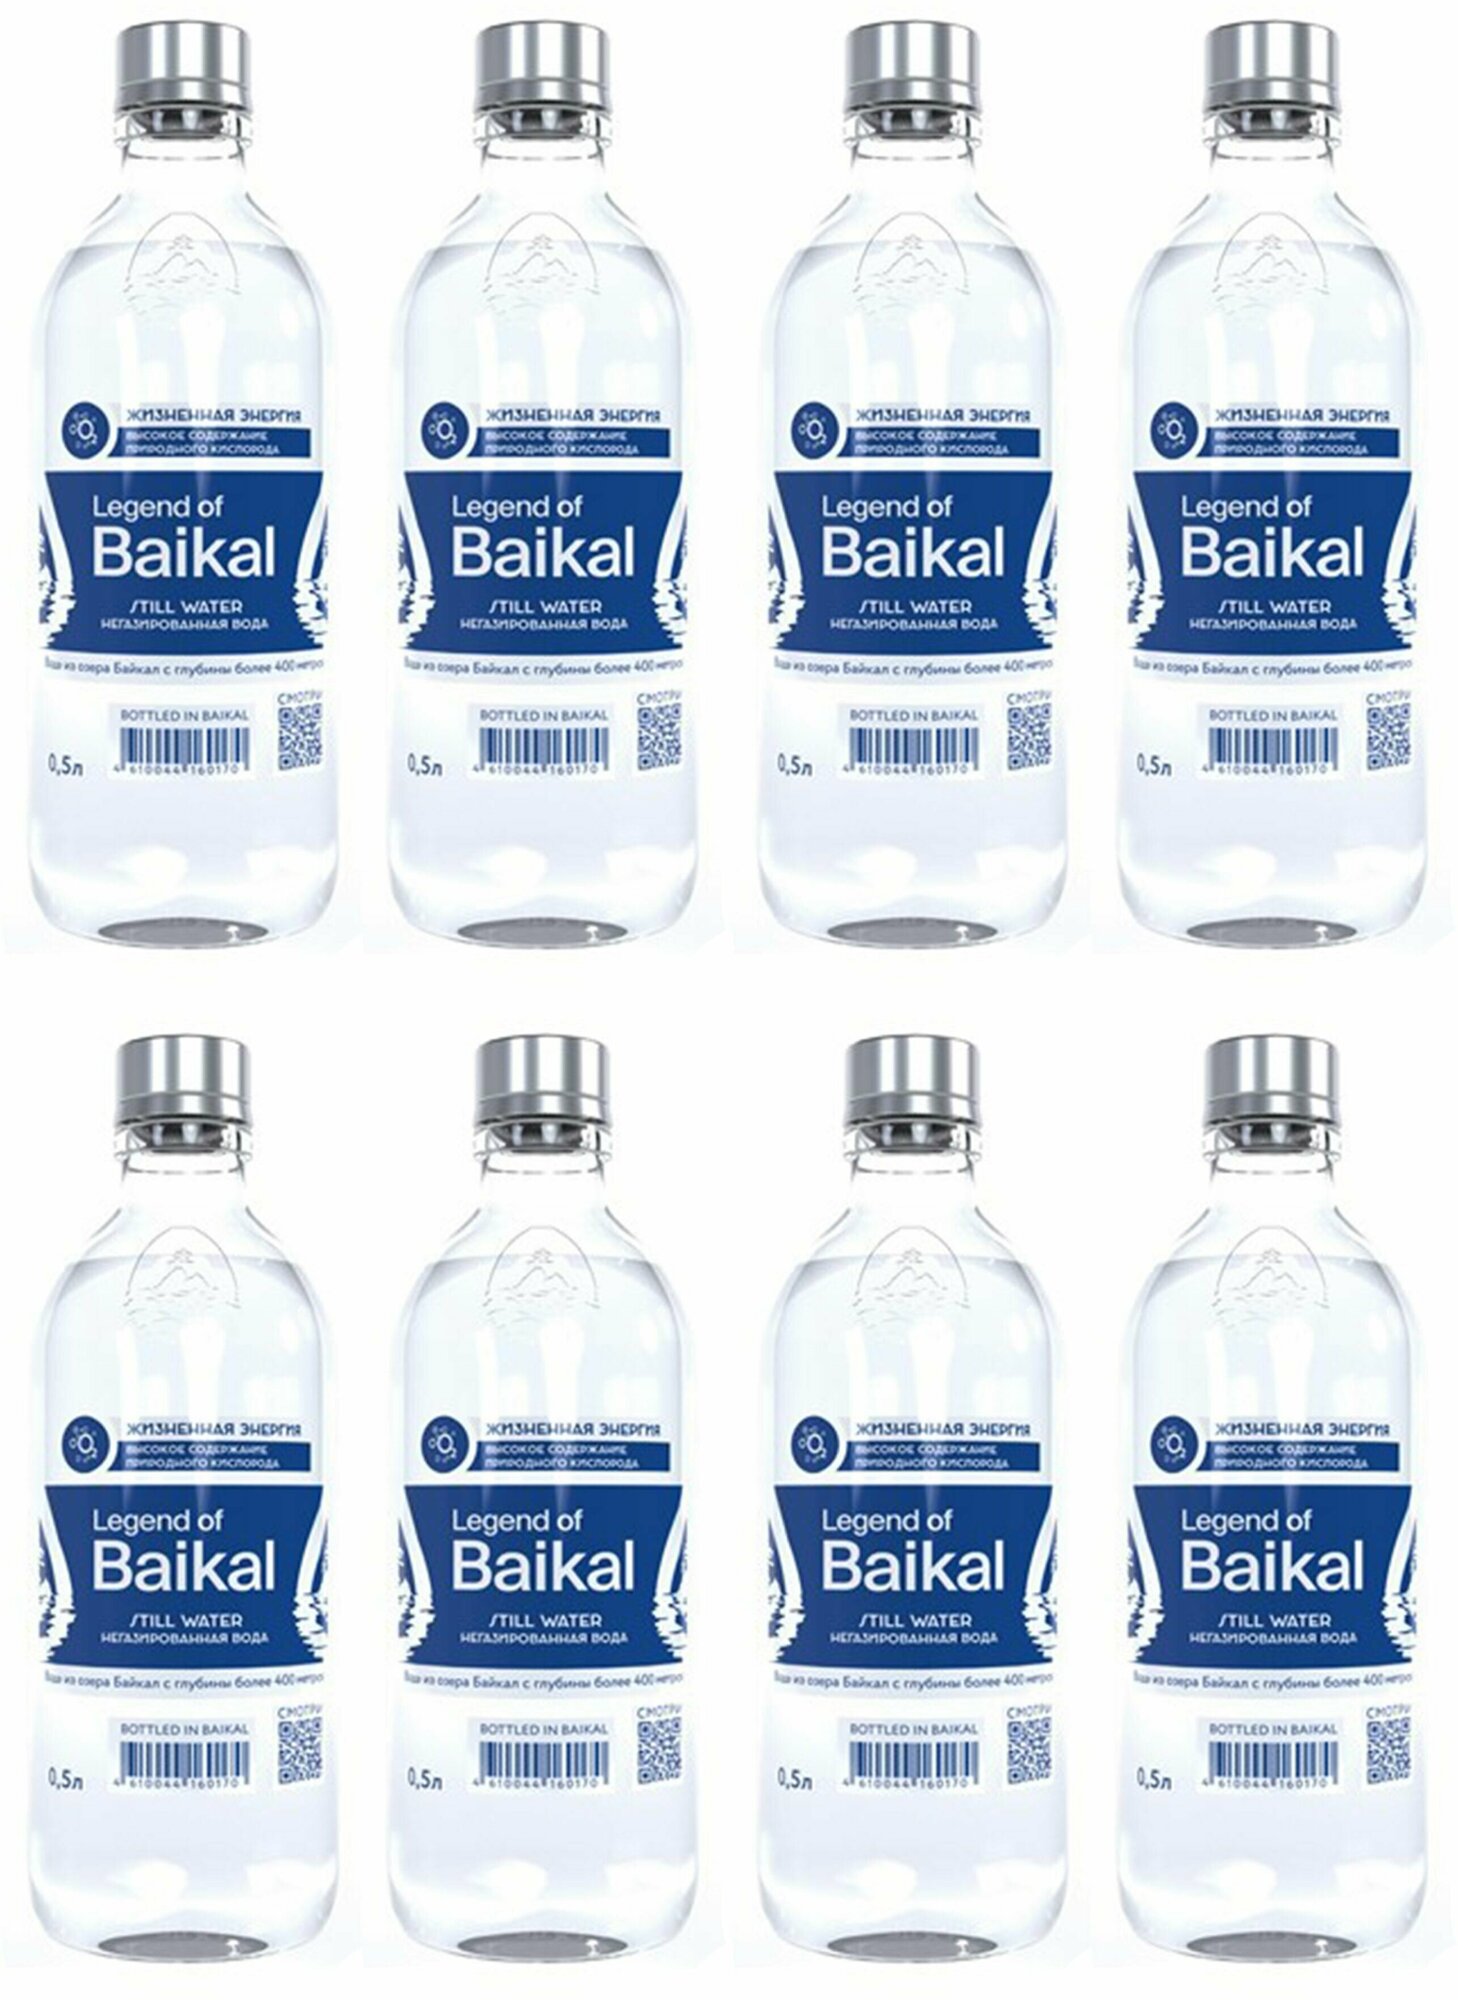 Вода Legend of Baikal питьевая негазированная, 8 упаковок